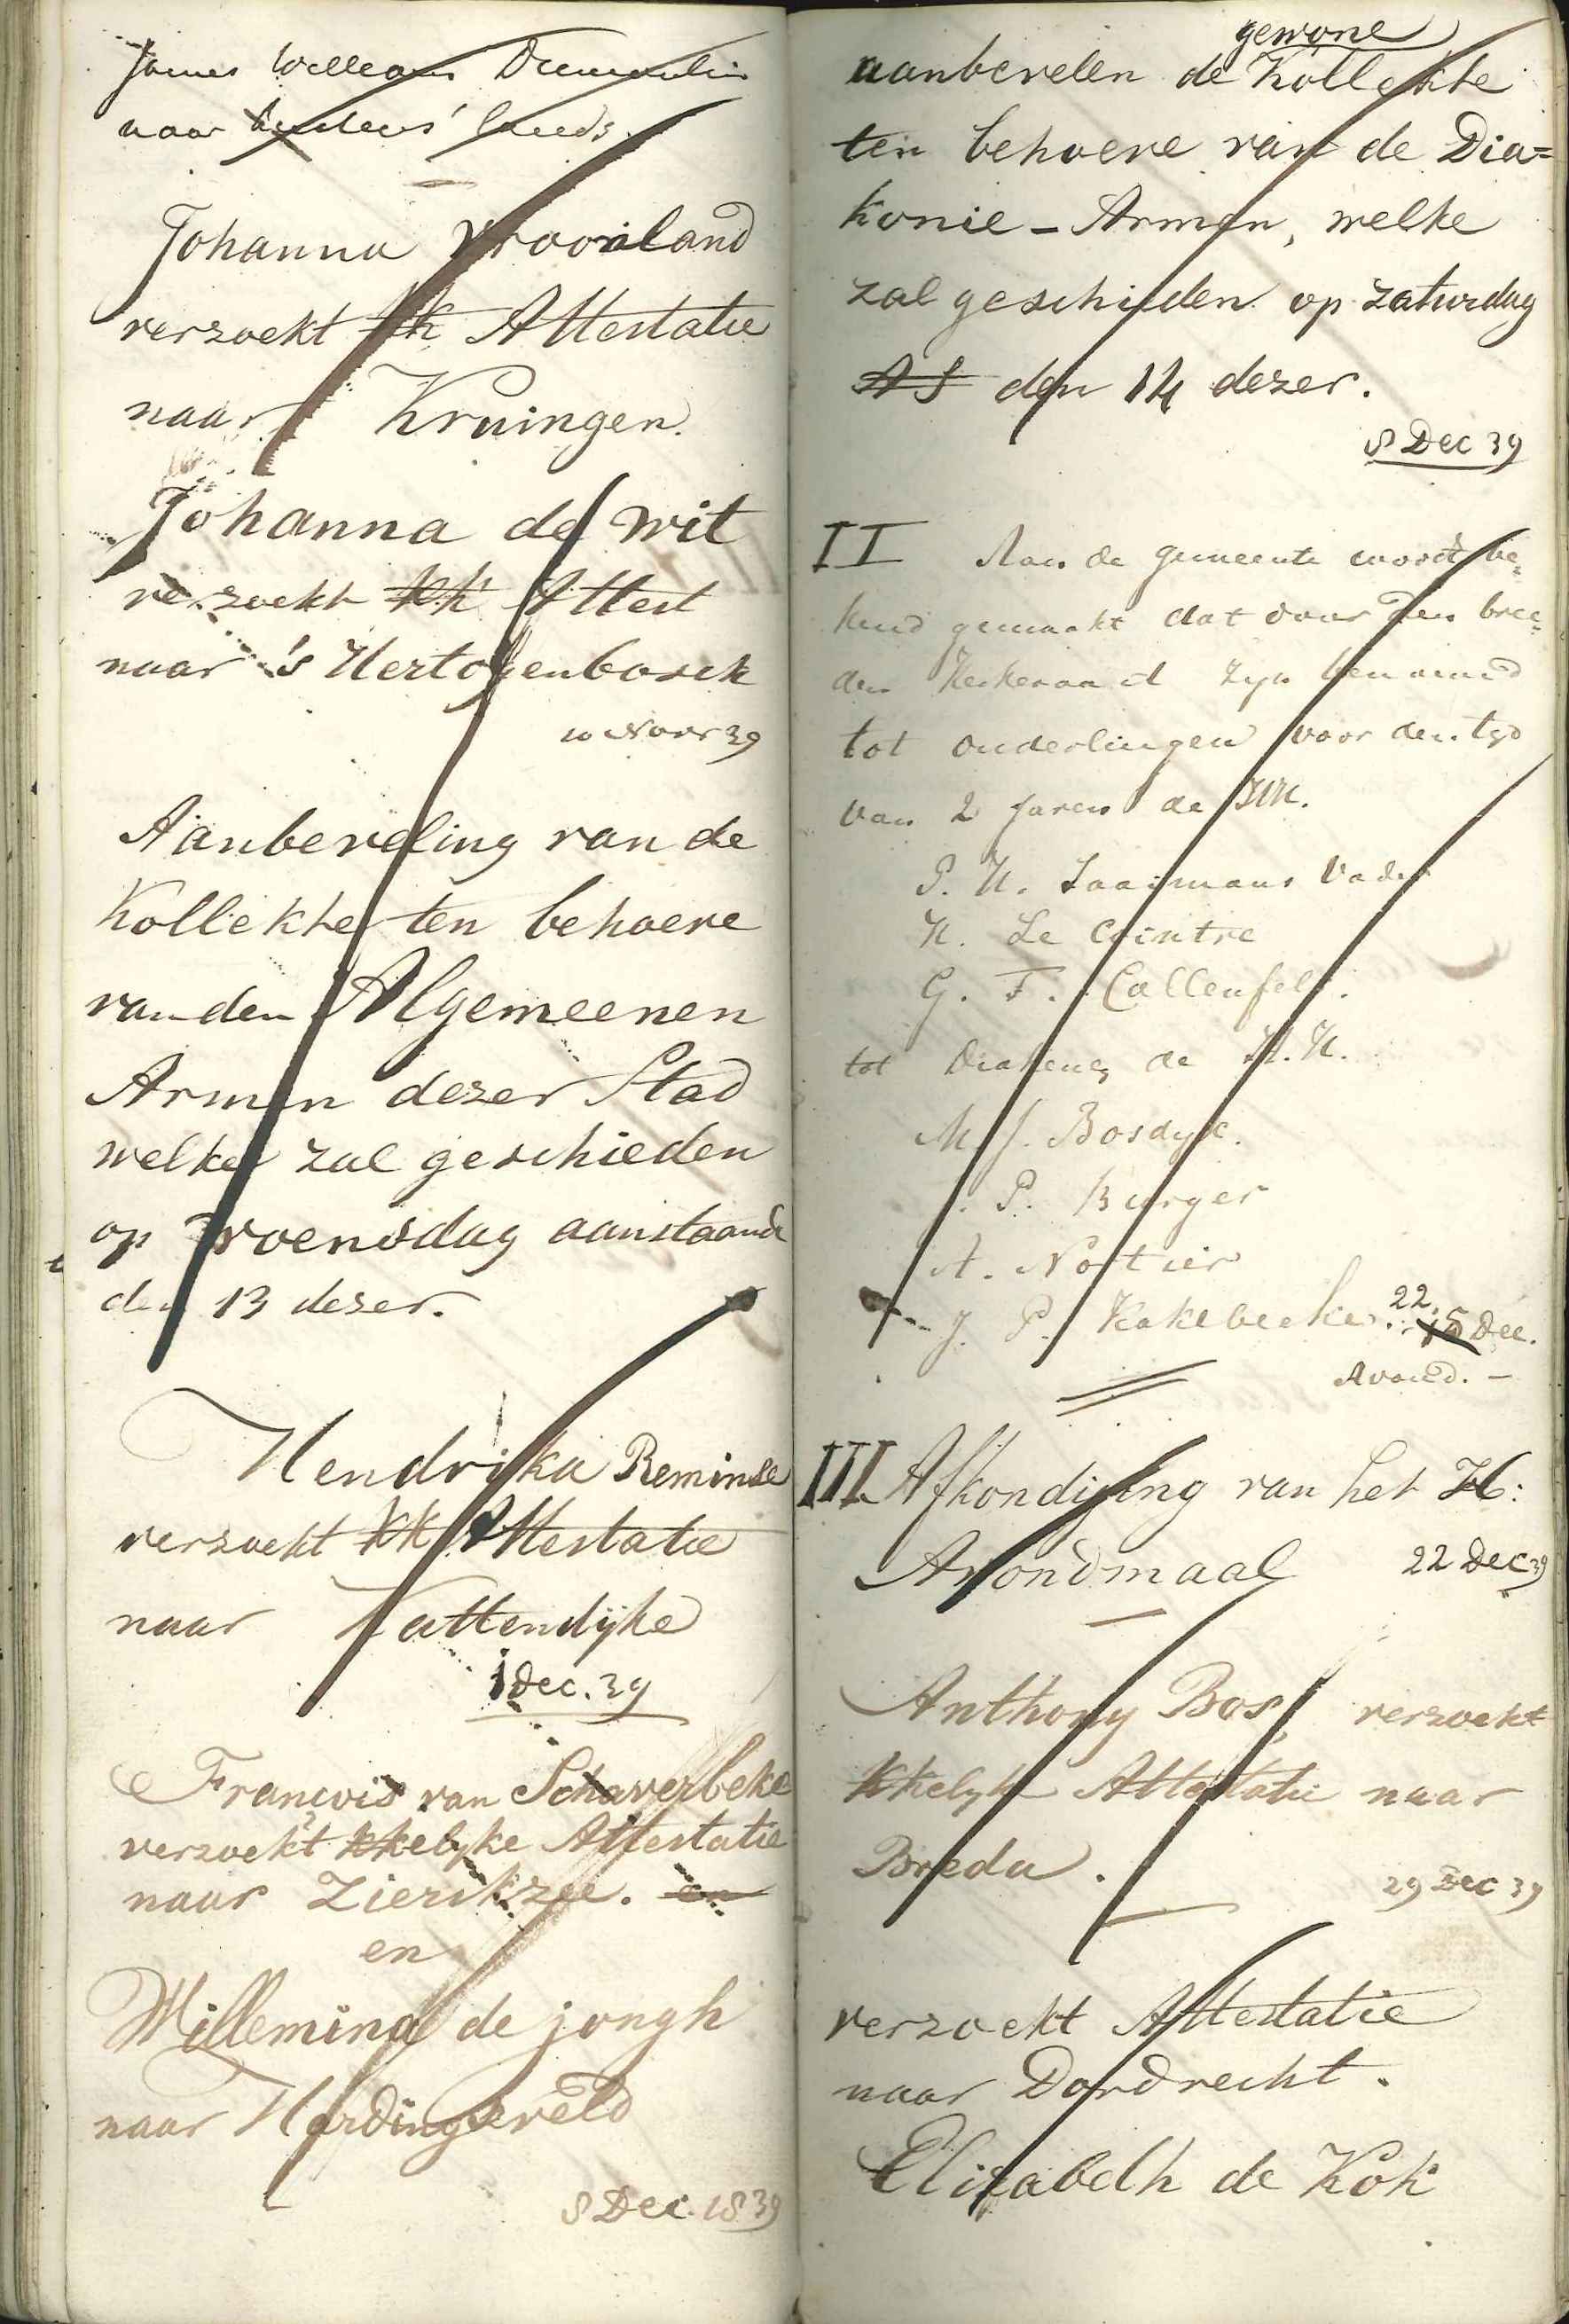 Register van kanselafkondigingen, 1839. GAG.Arch.herv.kerk, inv.nr. 43.